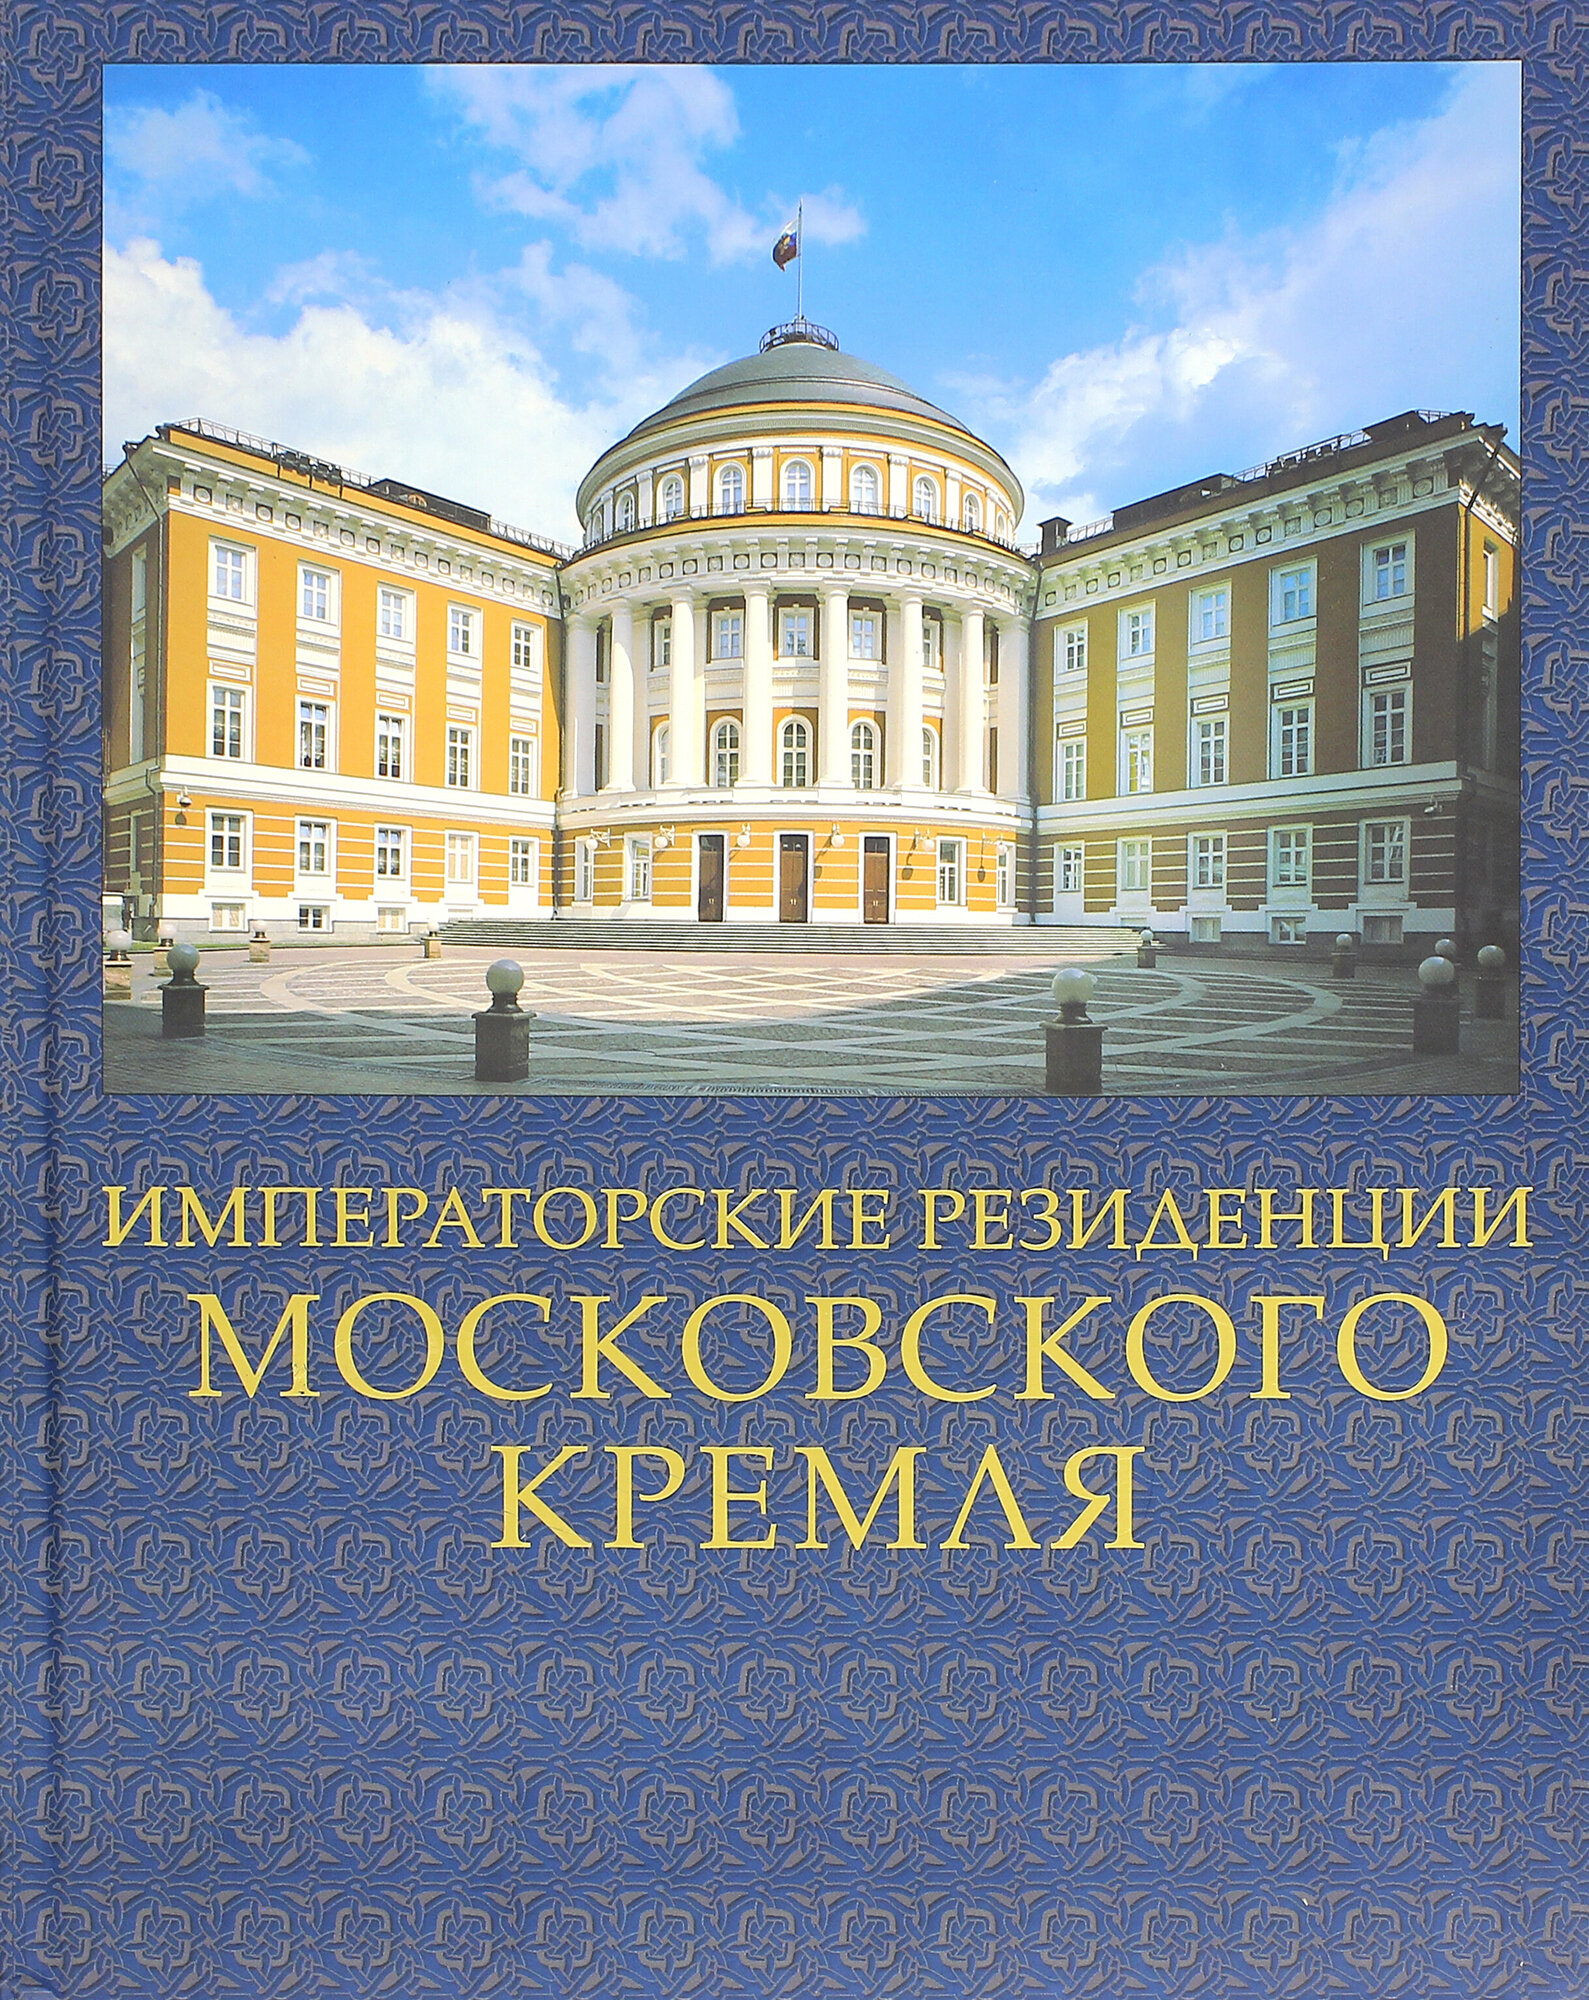 Императорские резиденции Московского Кремля - фото №1